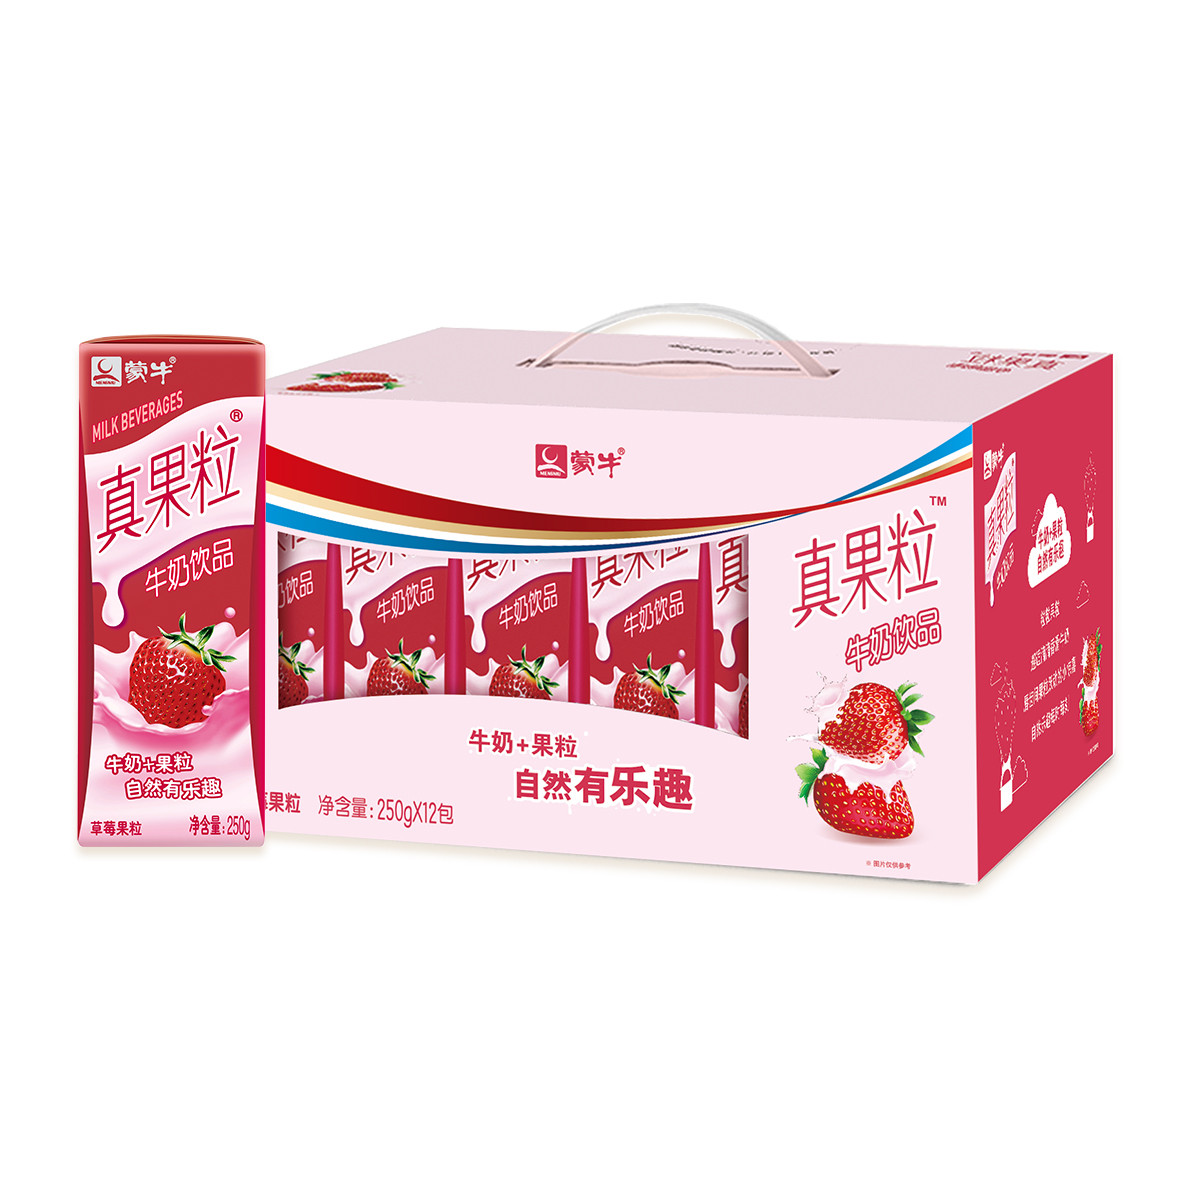 蒙牛真果粒草莓果粒牛奶饮品250g*12包(1月生产)color红色